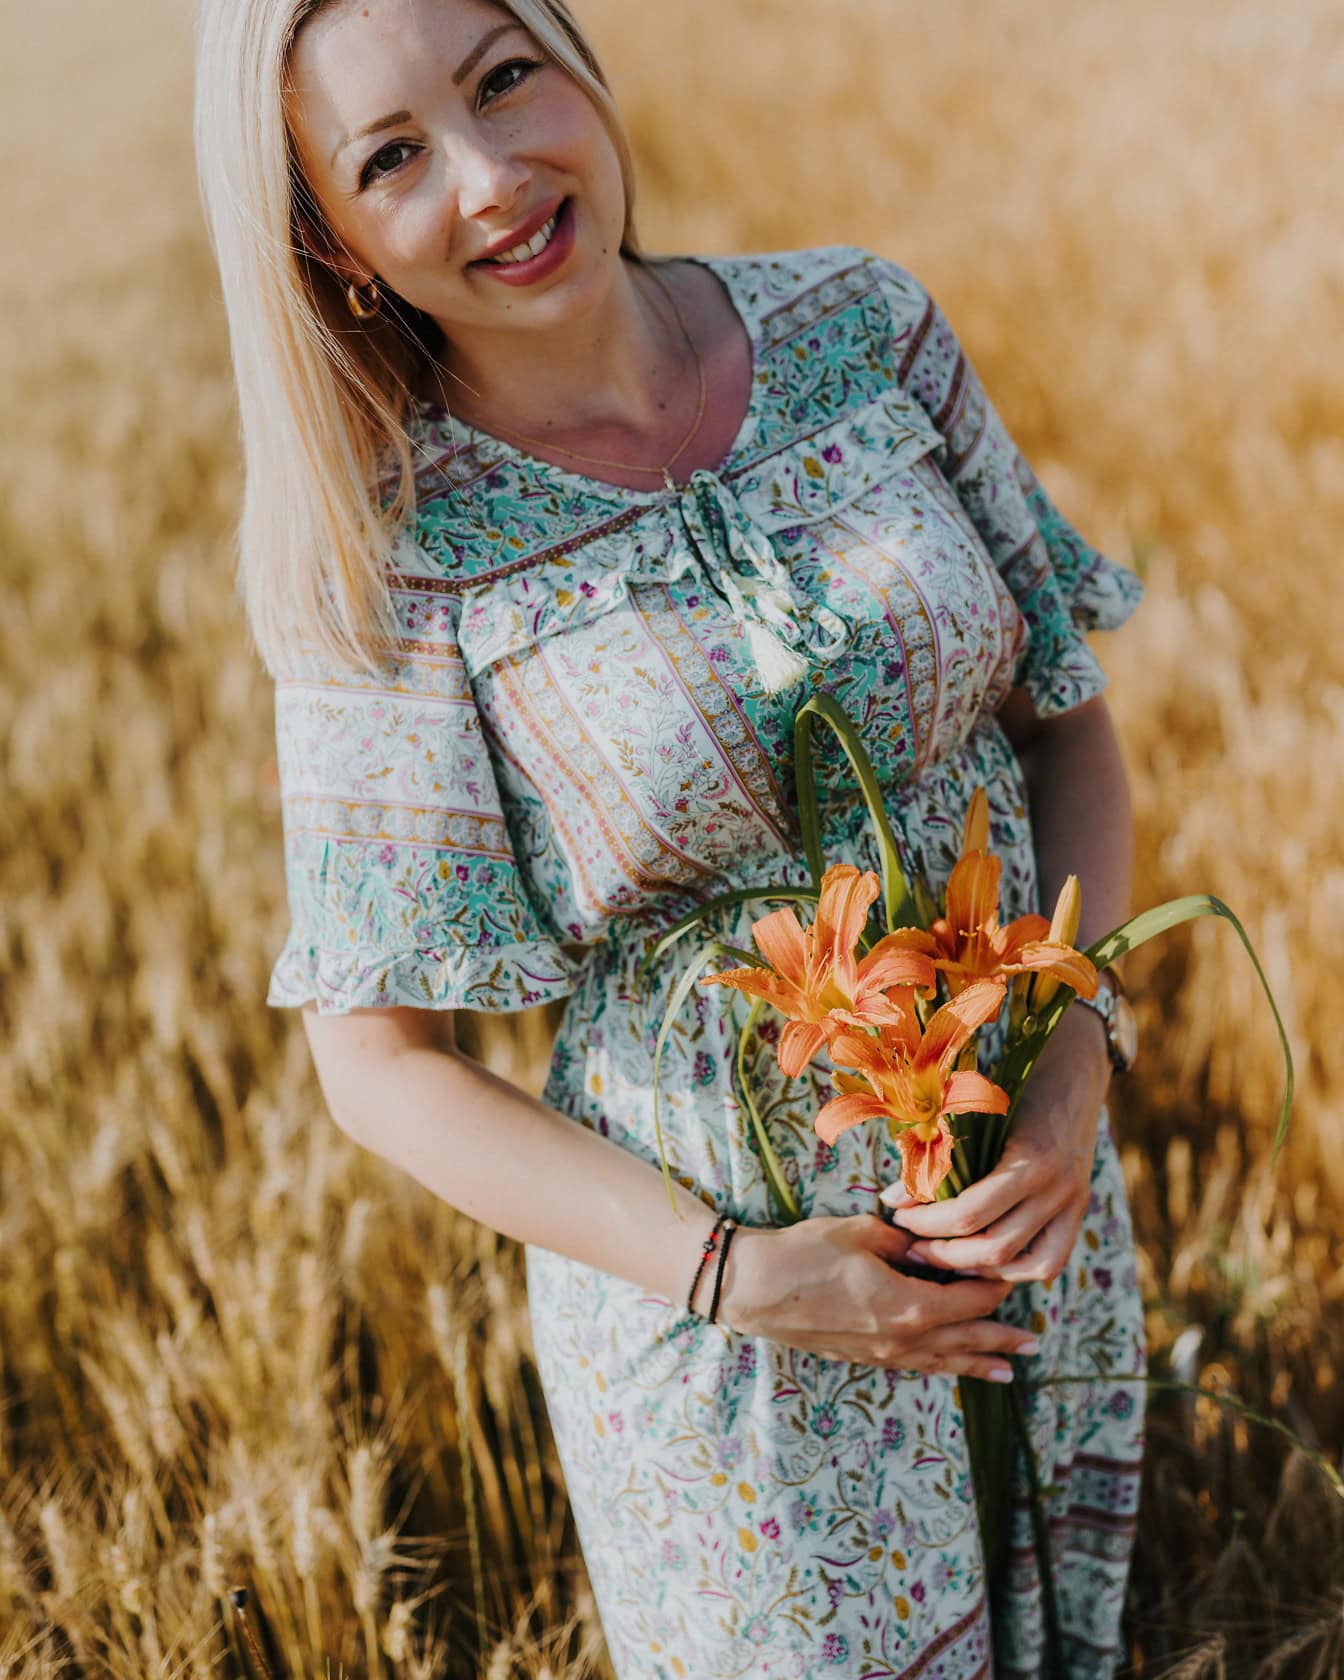 Une jeune femme de la campagne dans une robe à motifs floraux tenant un bouquet de lys orange dans un champ de blé par une chaude journée d’été